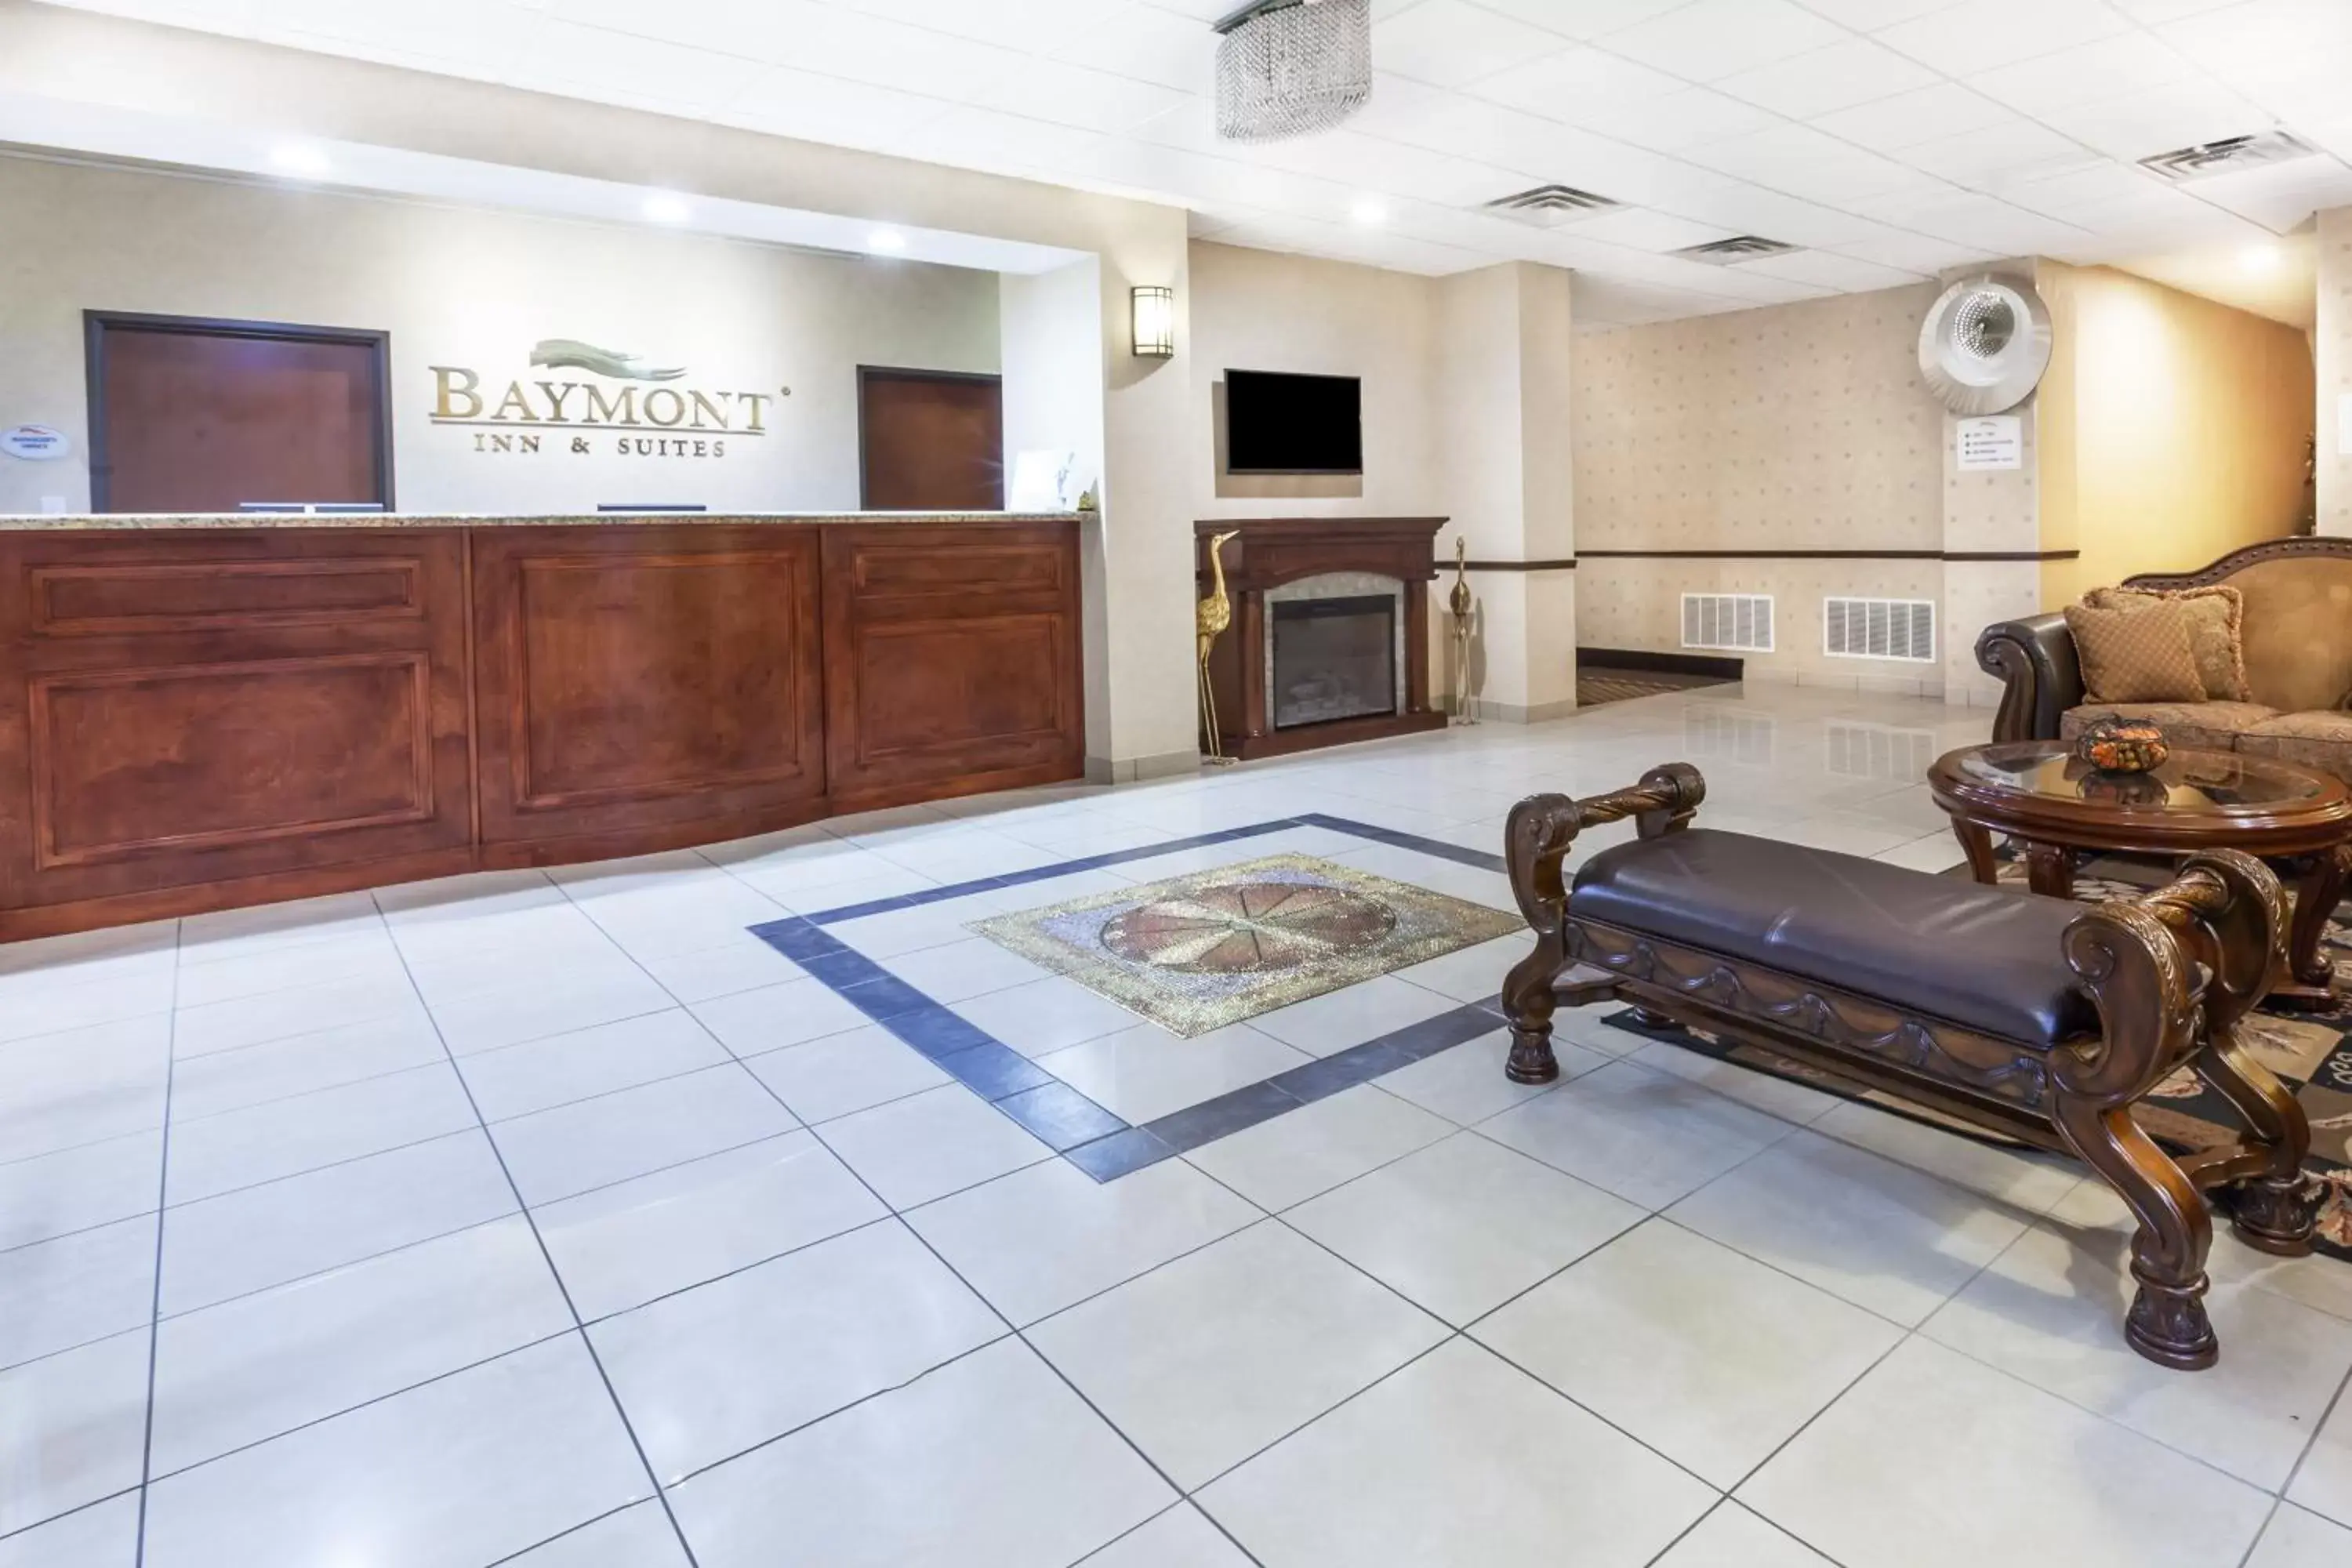 Lobby or reception, Lobby/Reception in Baymont by Wyndham Tyler